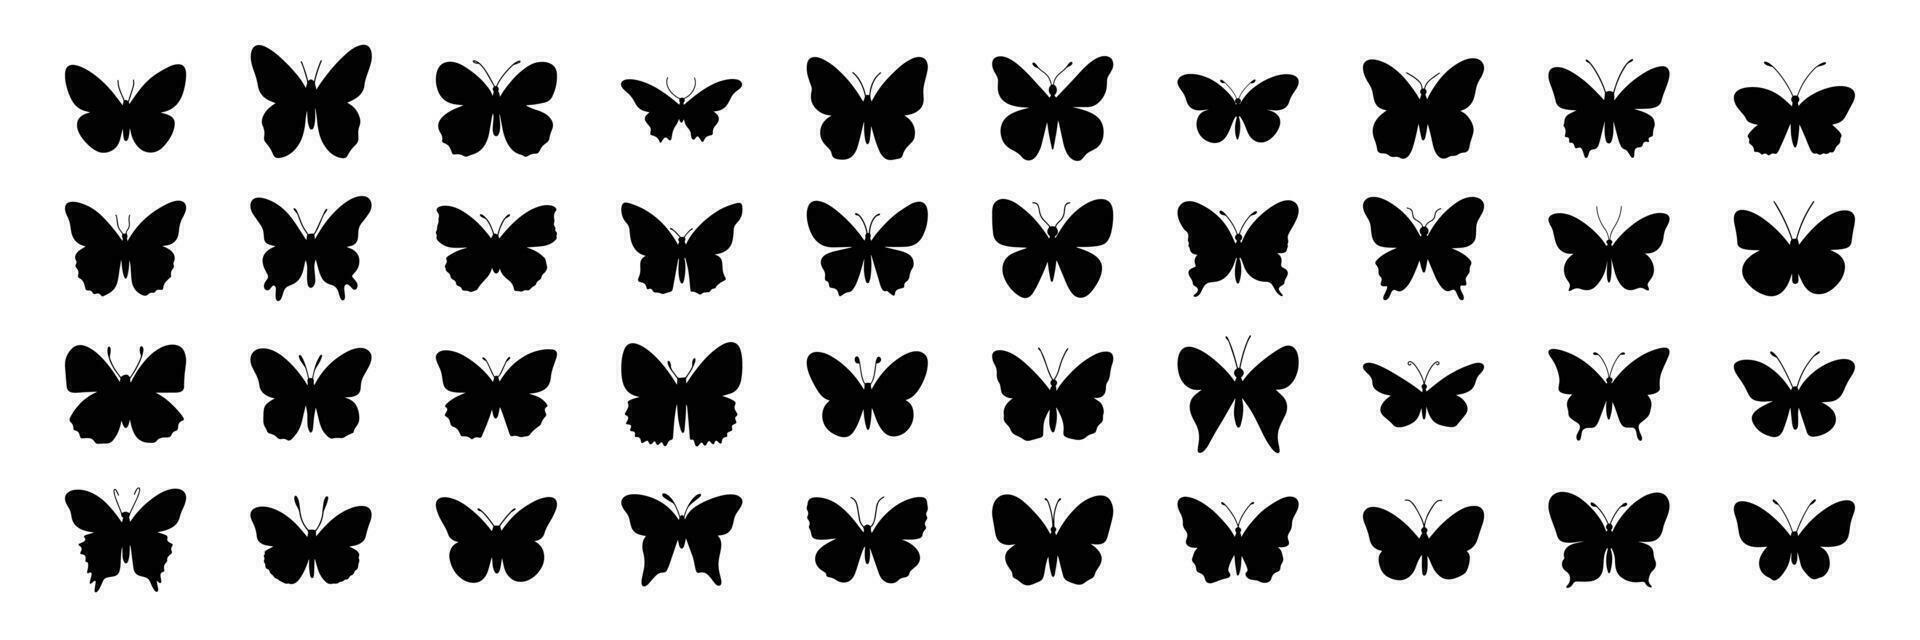 groß einstellen von Silhouette Schmetterling. schwarz Silhouette von Schmetterling isoliert auf Weiß Hintergrund. Vektor Illustration.